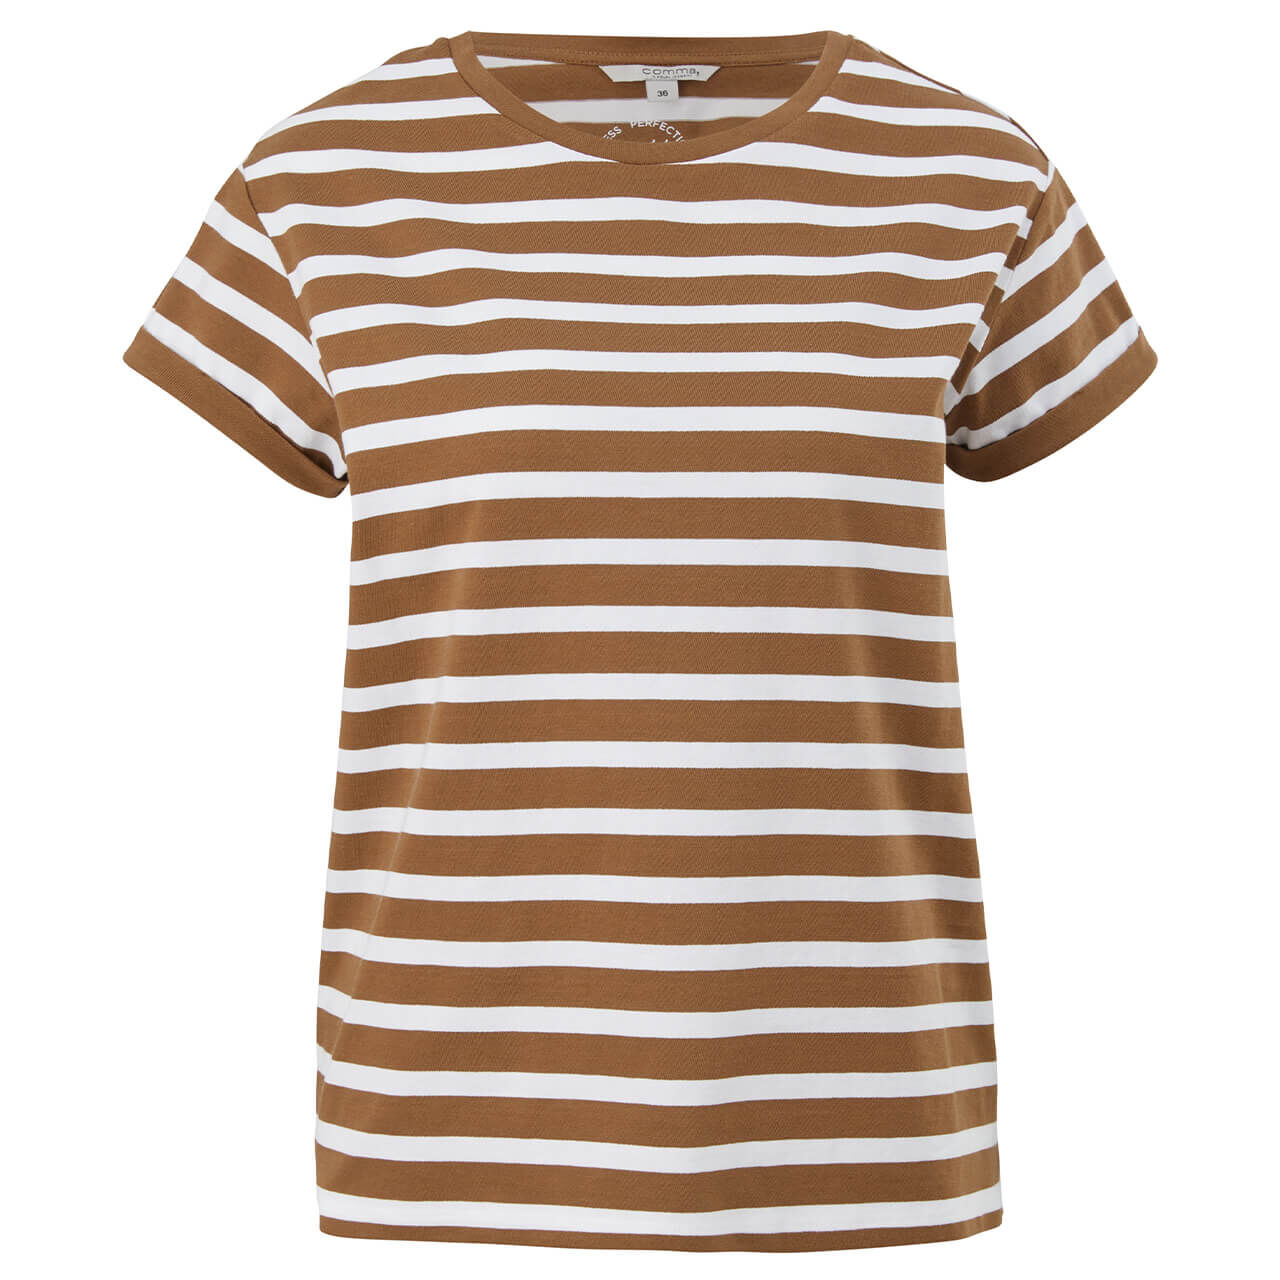 Comma T-Shirt für Damen in Braun gestreift, FarbNr.: 84G5